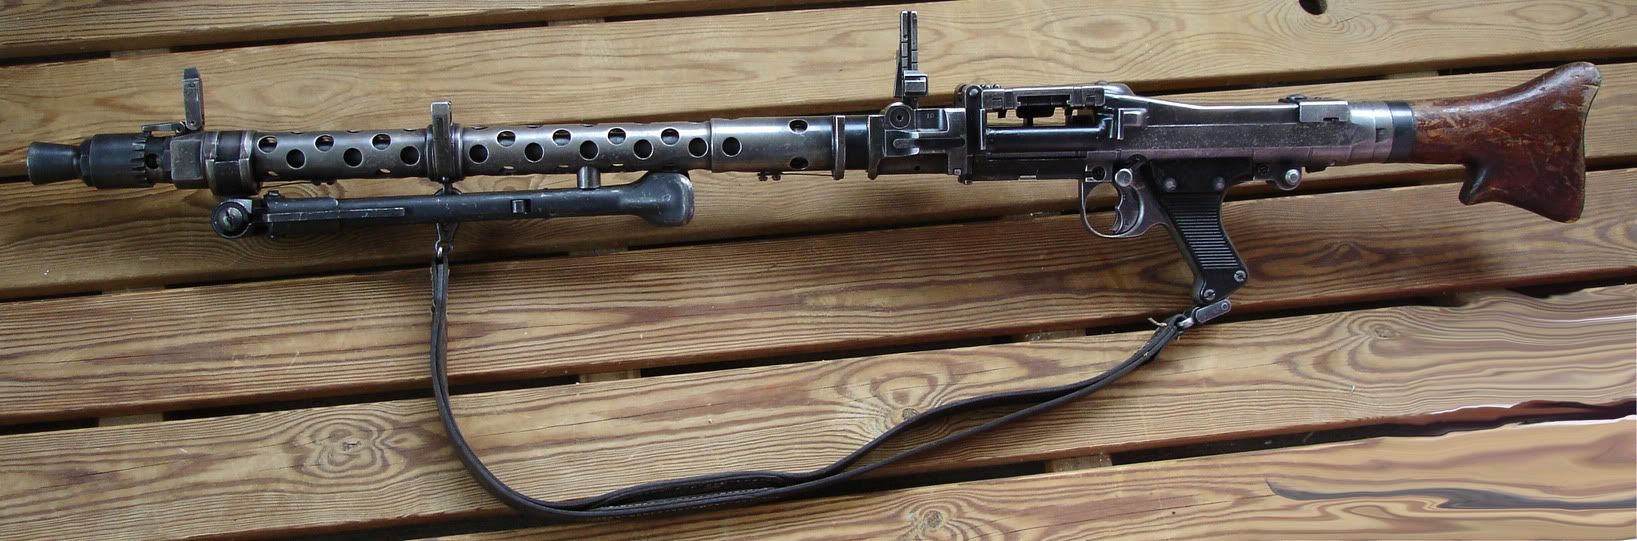 MG34a.jpg